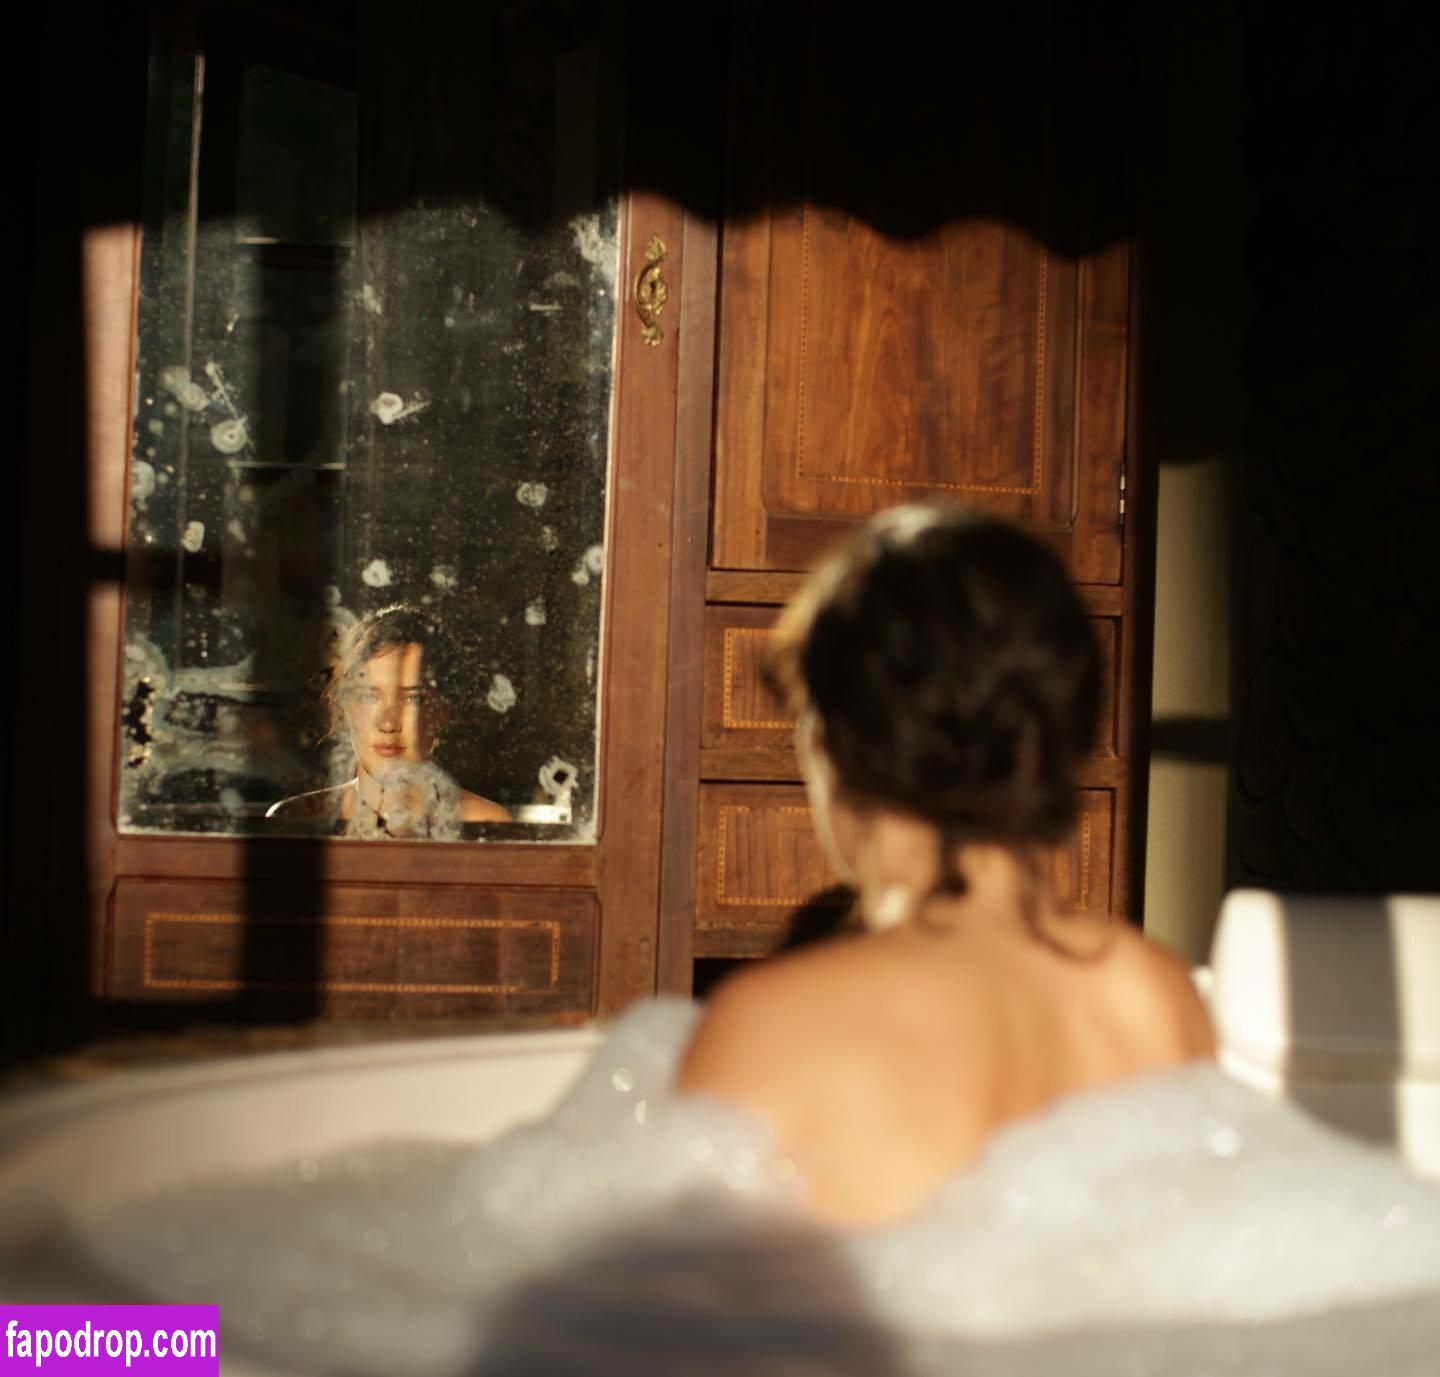 Adriana Birolli / adrianabirolli / adrivainilla leak of nude photo #0026 from OnlyFans or Patreon